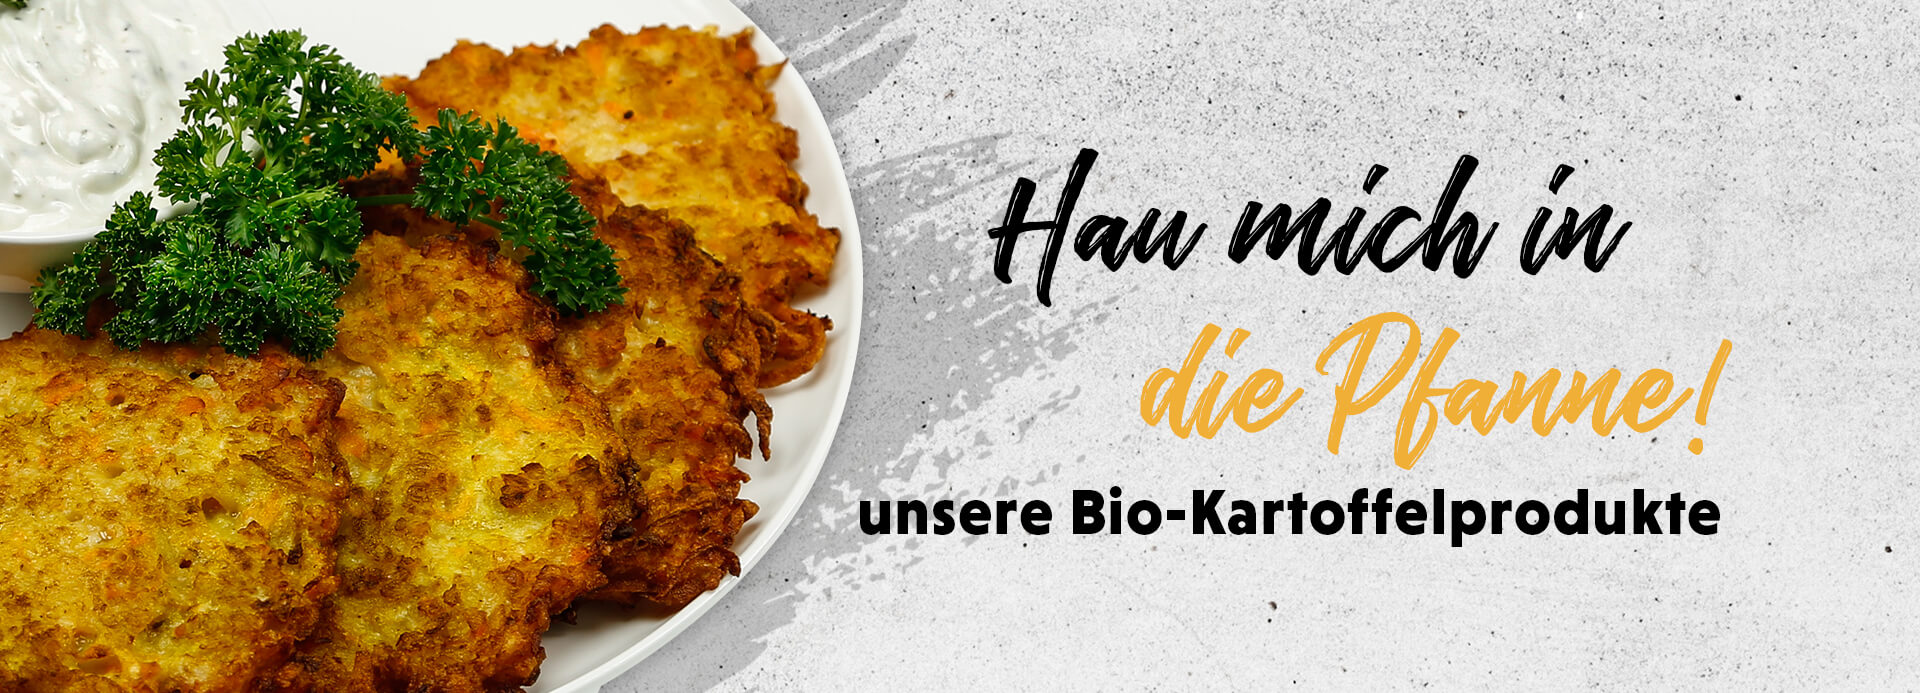 Kartoffelpuffer auf einem Teller. Auf dem Bild steht die Überschrift „Hau mich in die Pfanne! unsere Bio-Kartoffelprodukte“.